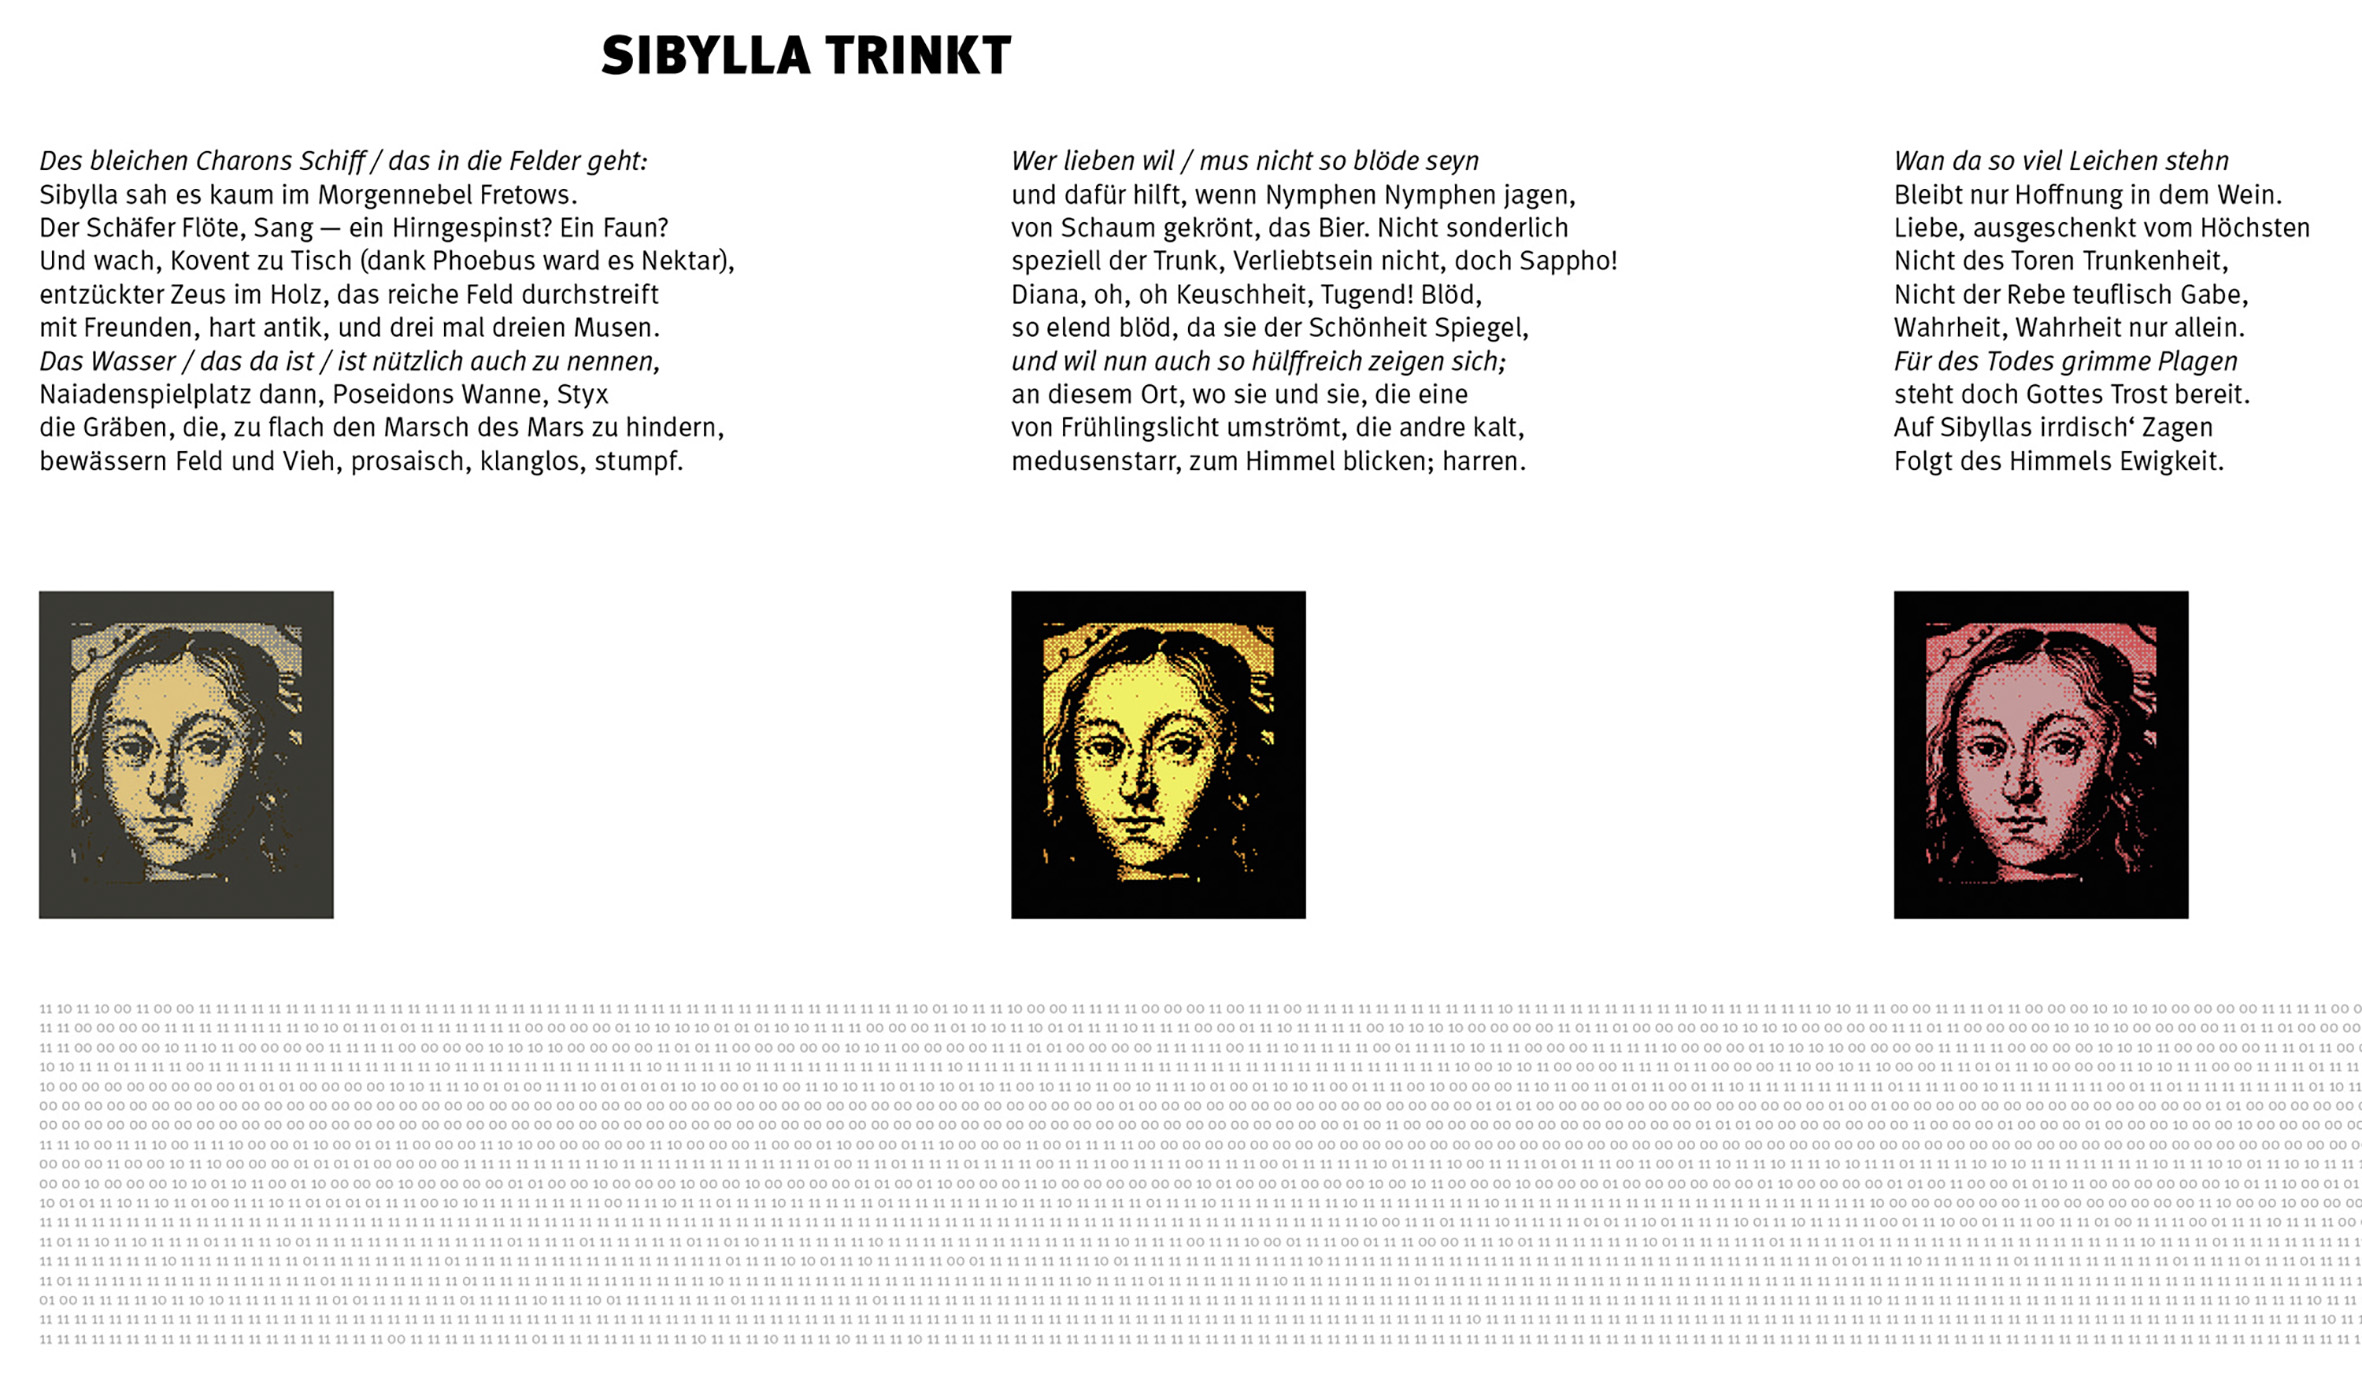 Tobias Reußwig, Sibylla trinkt, Text und Bildcollage auf Banner, 100x1000cm, 2022 (Ausschnitt)